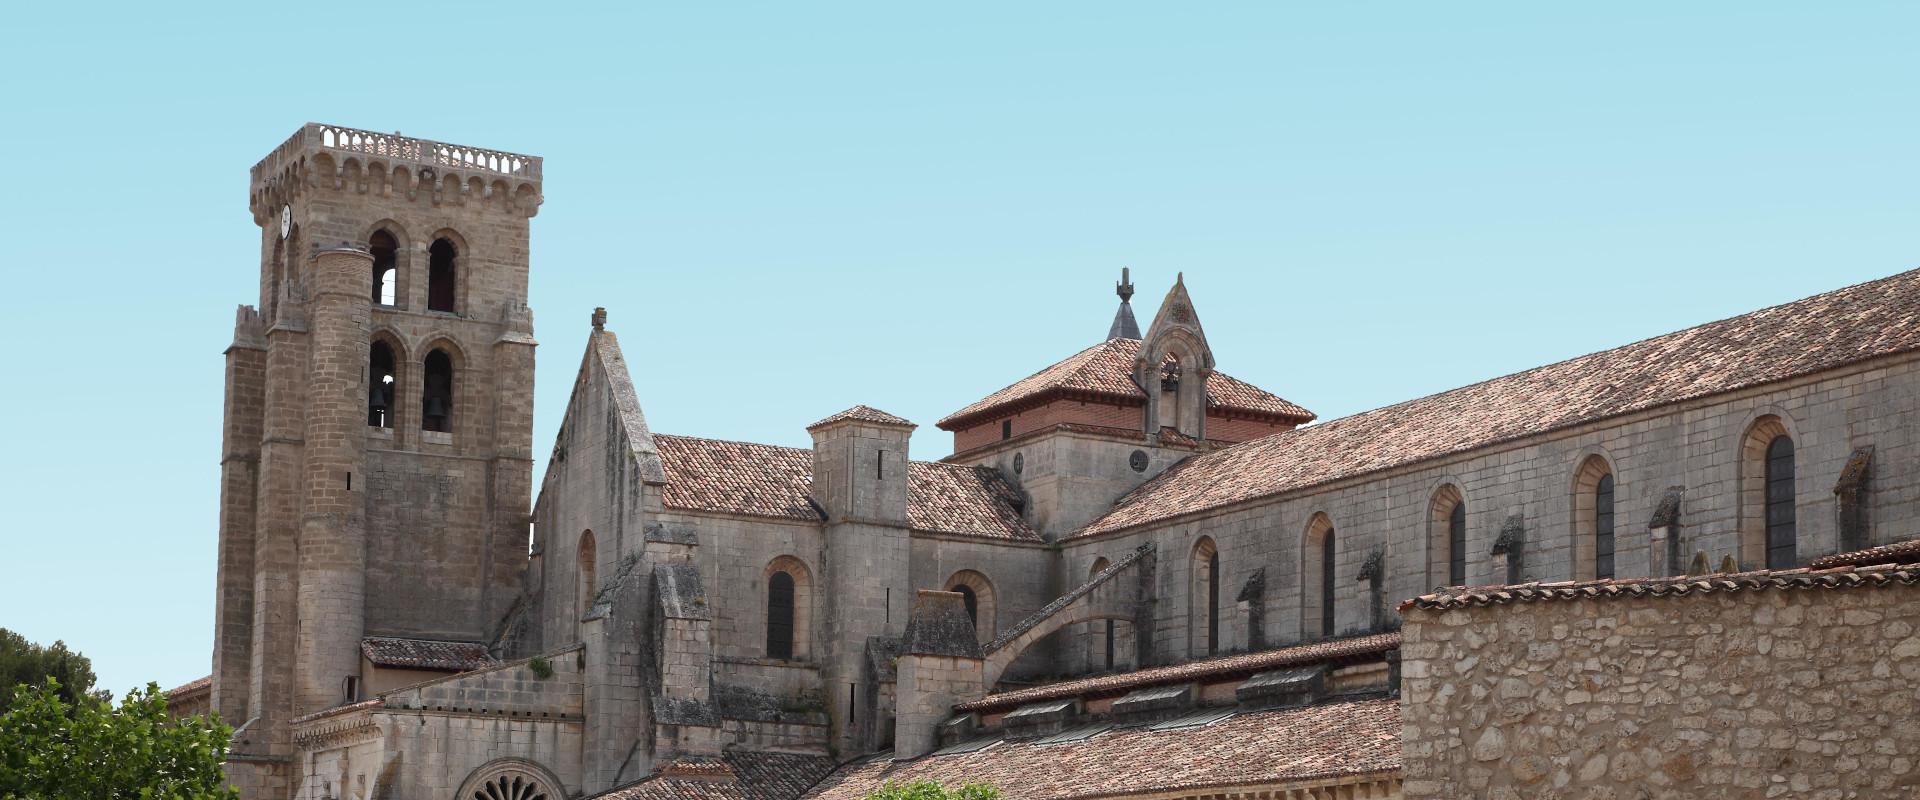 Las Huelgas, un monasterio único donde la poderosa abadesa solo respondía ante el Papa 2